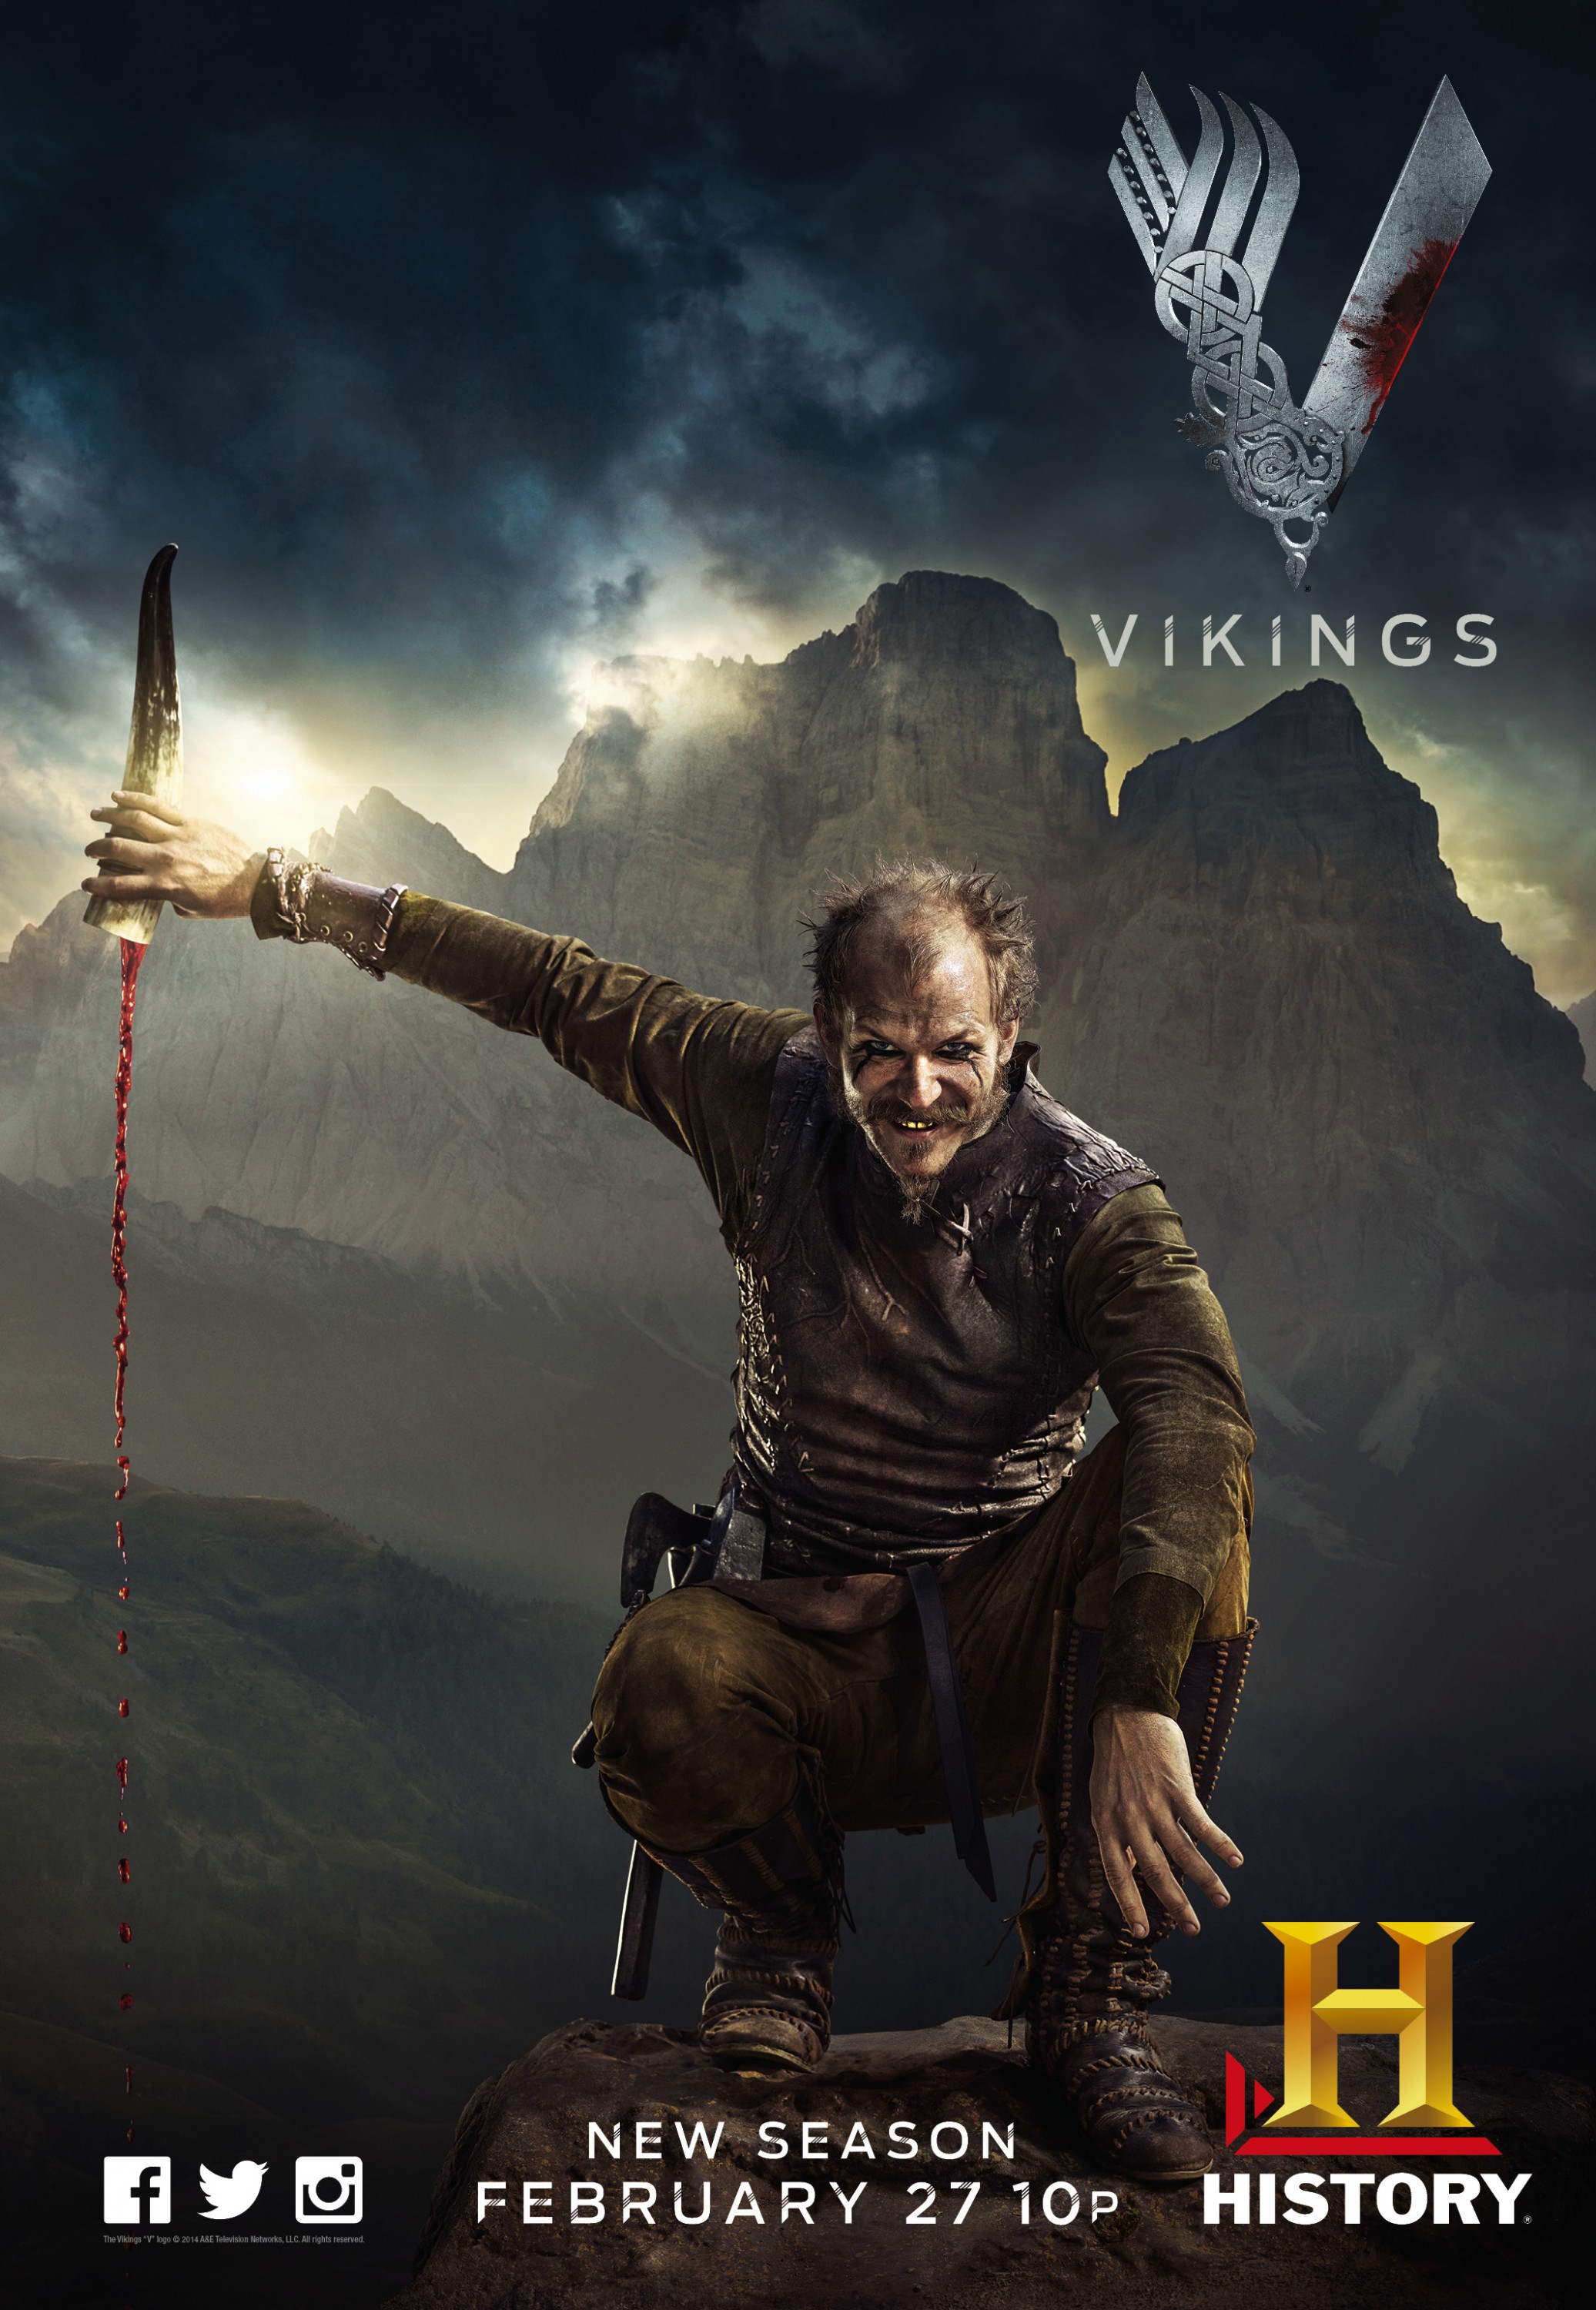 Mega Sized TV Poster Image for Vikings (#5 of 30)